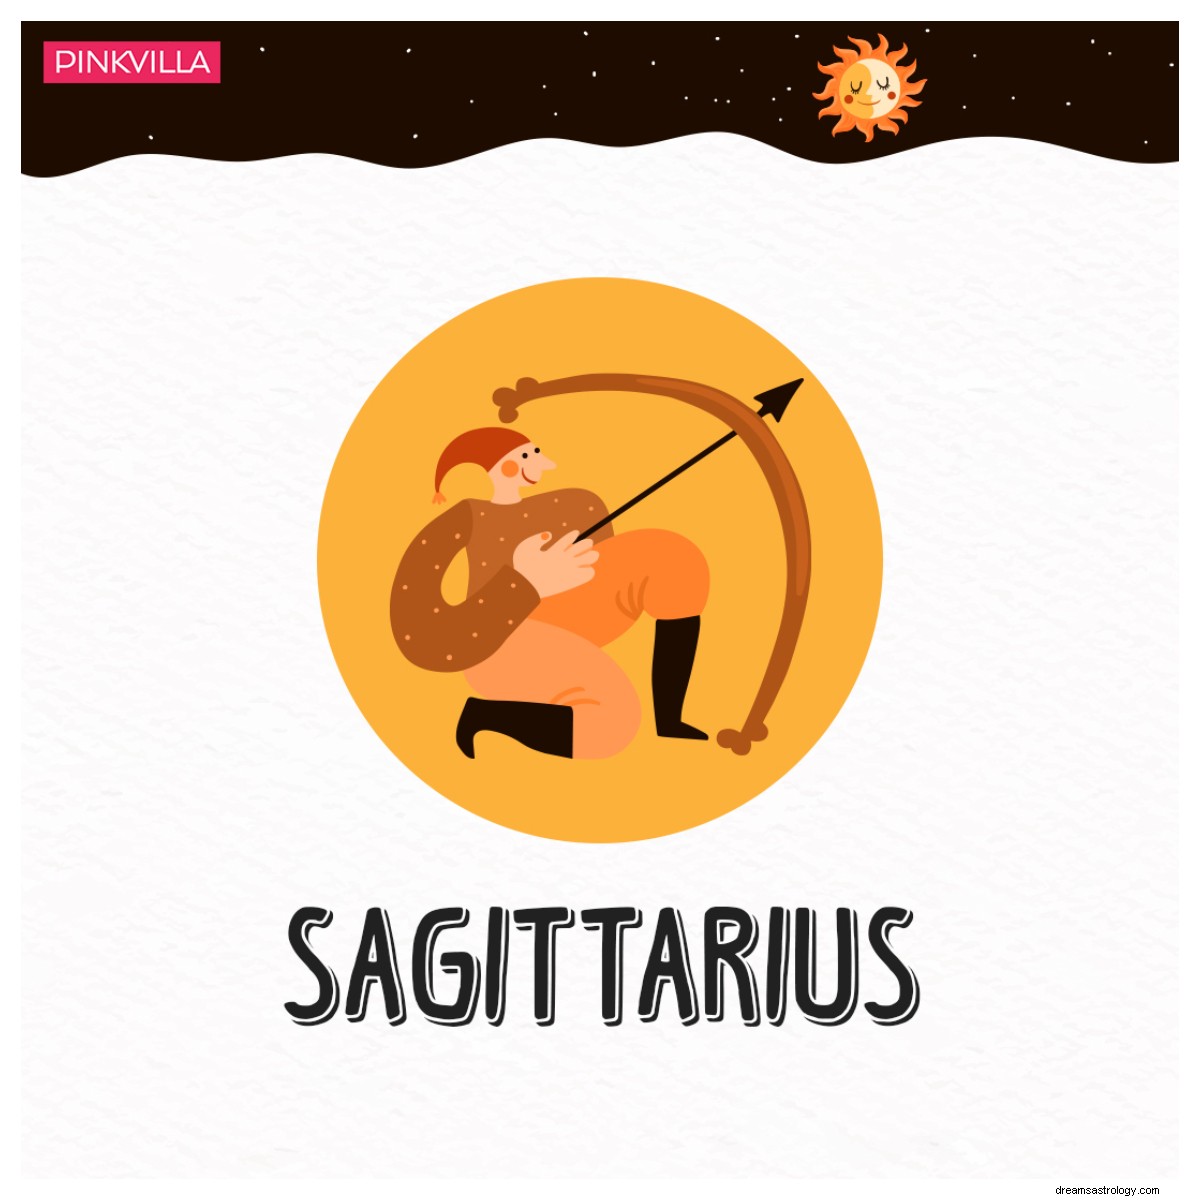 Dall Acquario al Sagittario:4 segni zodiacali difficili da impressionare 